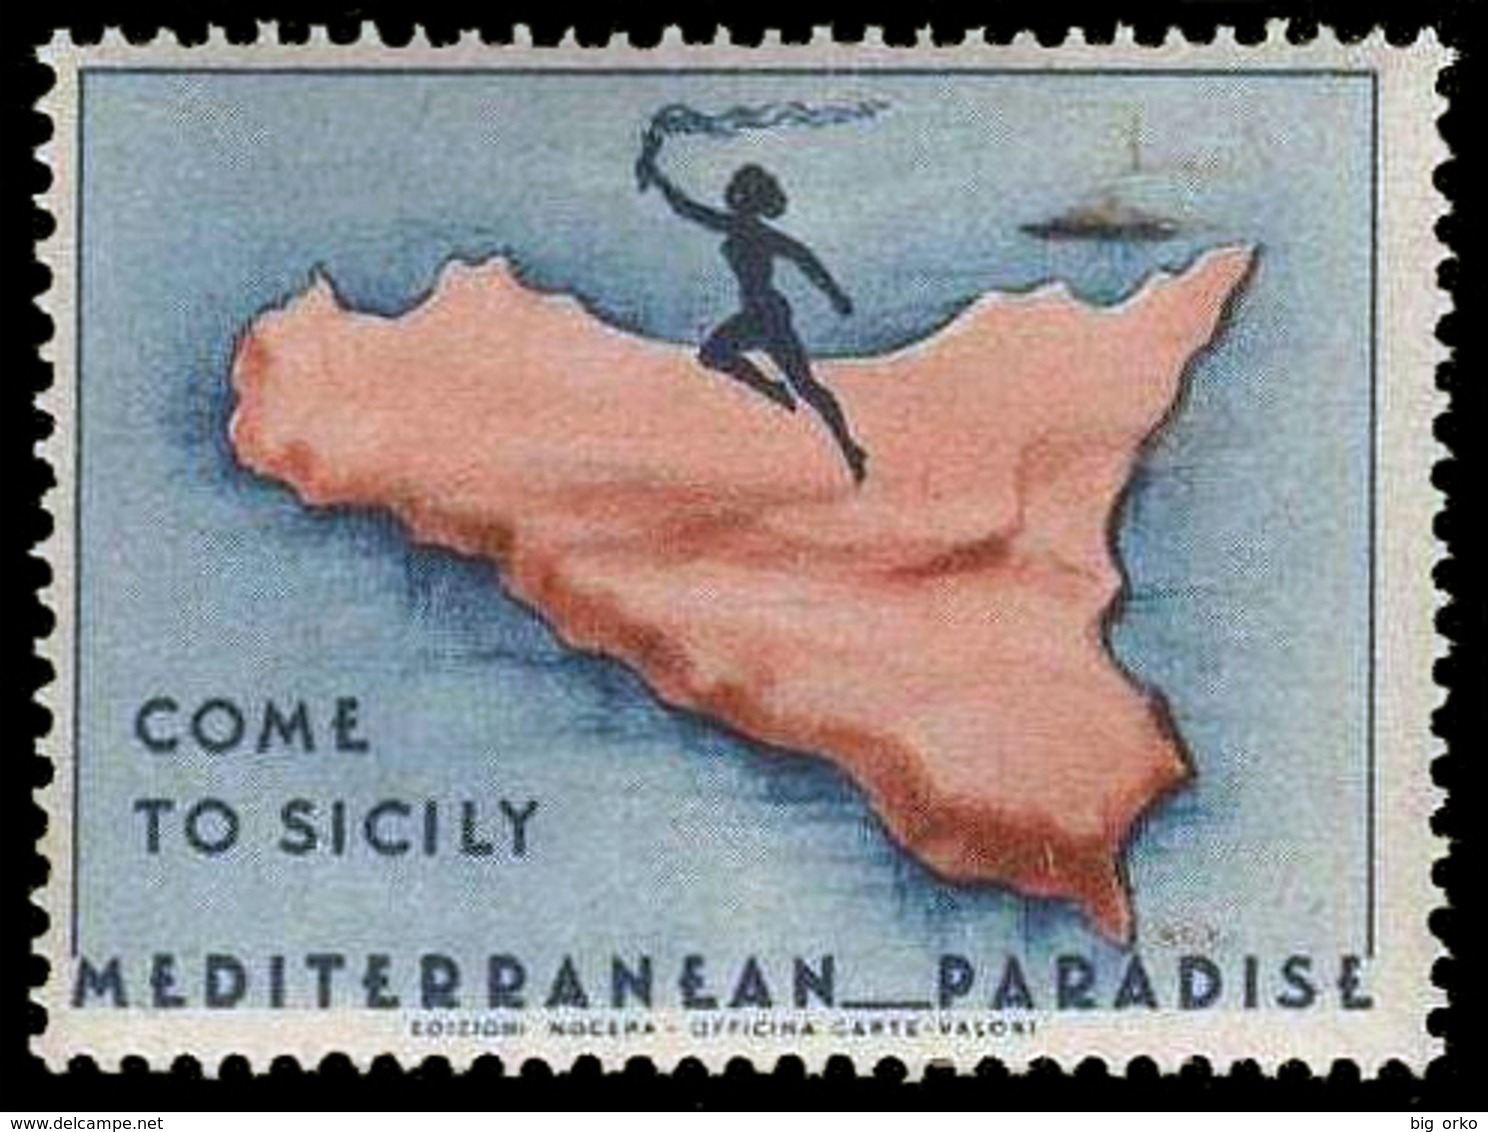 Italia - Propaganda Turistica A Cura Degli Alleati - COME TO SICILY MEDITERRANEAN PARADISE - 1946/47 - Occ. Anglo-américaine: Sicile